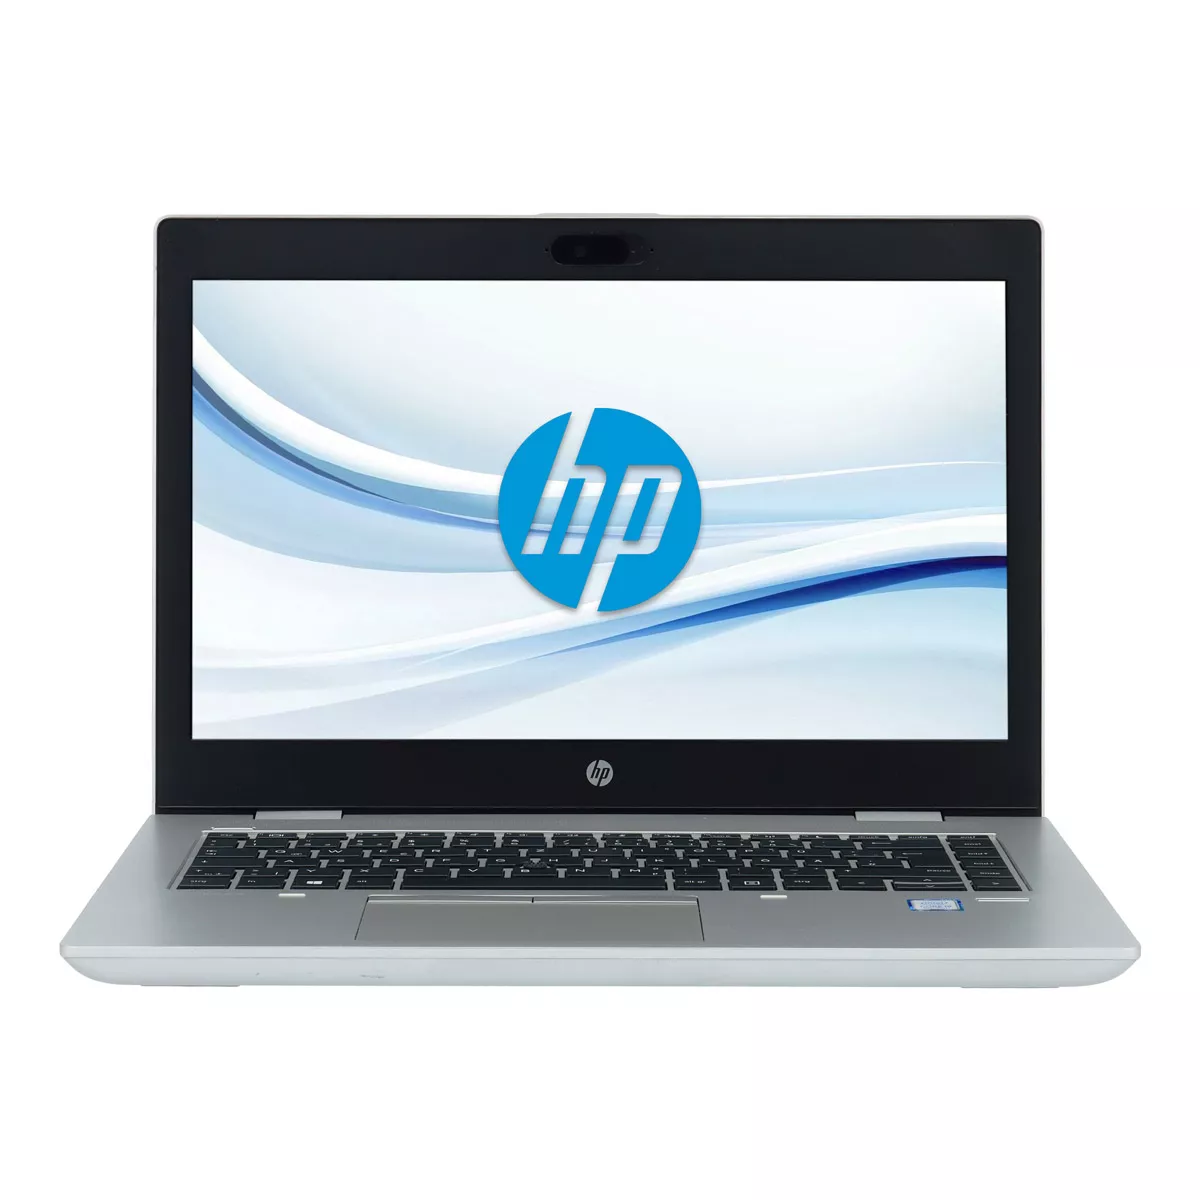 HP ProBook 640 G5 Core i7 8665U Full-HD 8 GB 240 GB M.2 nVME SSD Webcam B